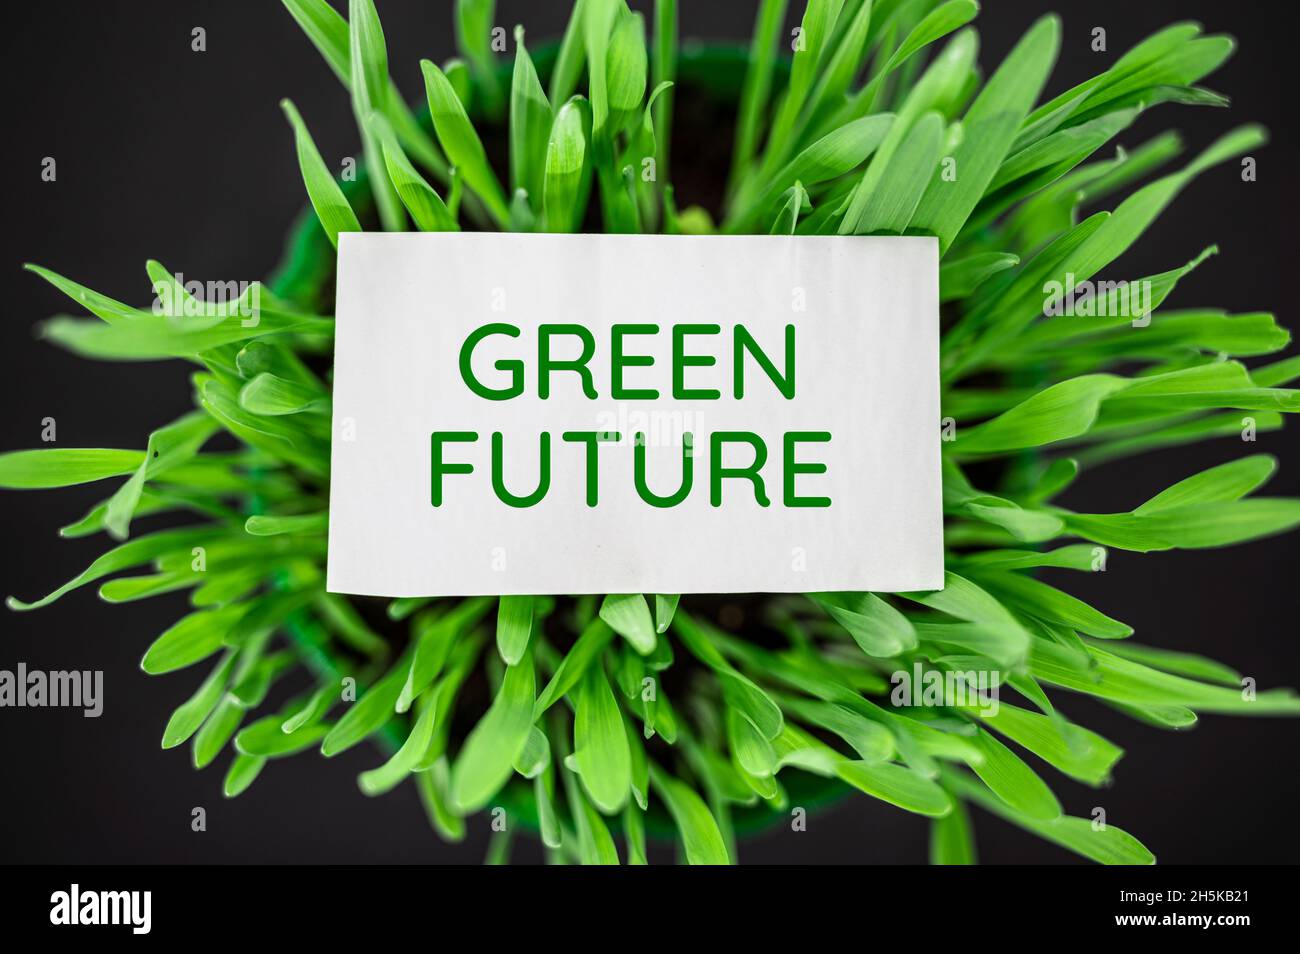 Vue de dessus de l'herbe verte avec le texte vert future.ECO, concept écologique. Banque D'Images